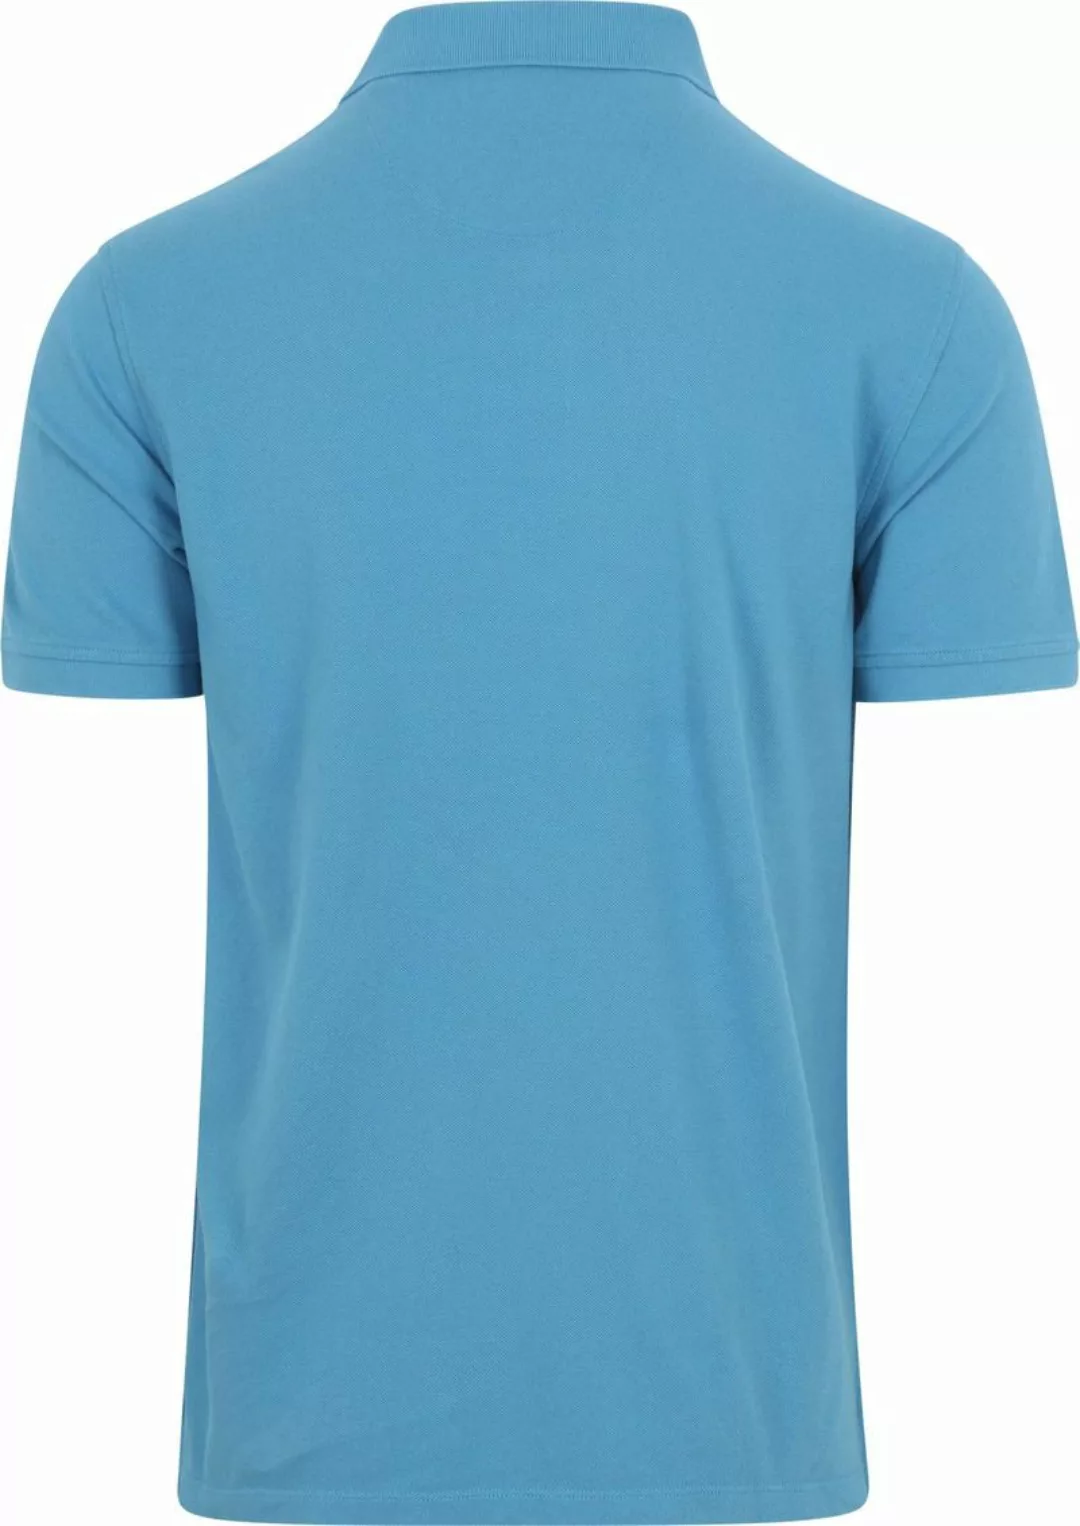 McGregor Classic Piqué Poloshirt Blau - Größe L günstig online kaufen